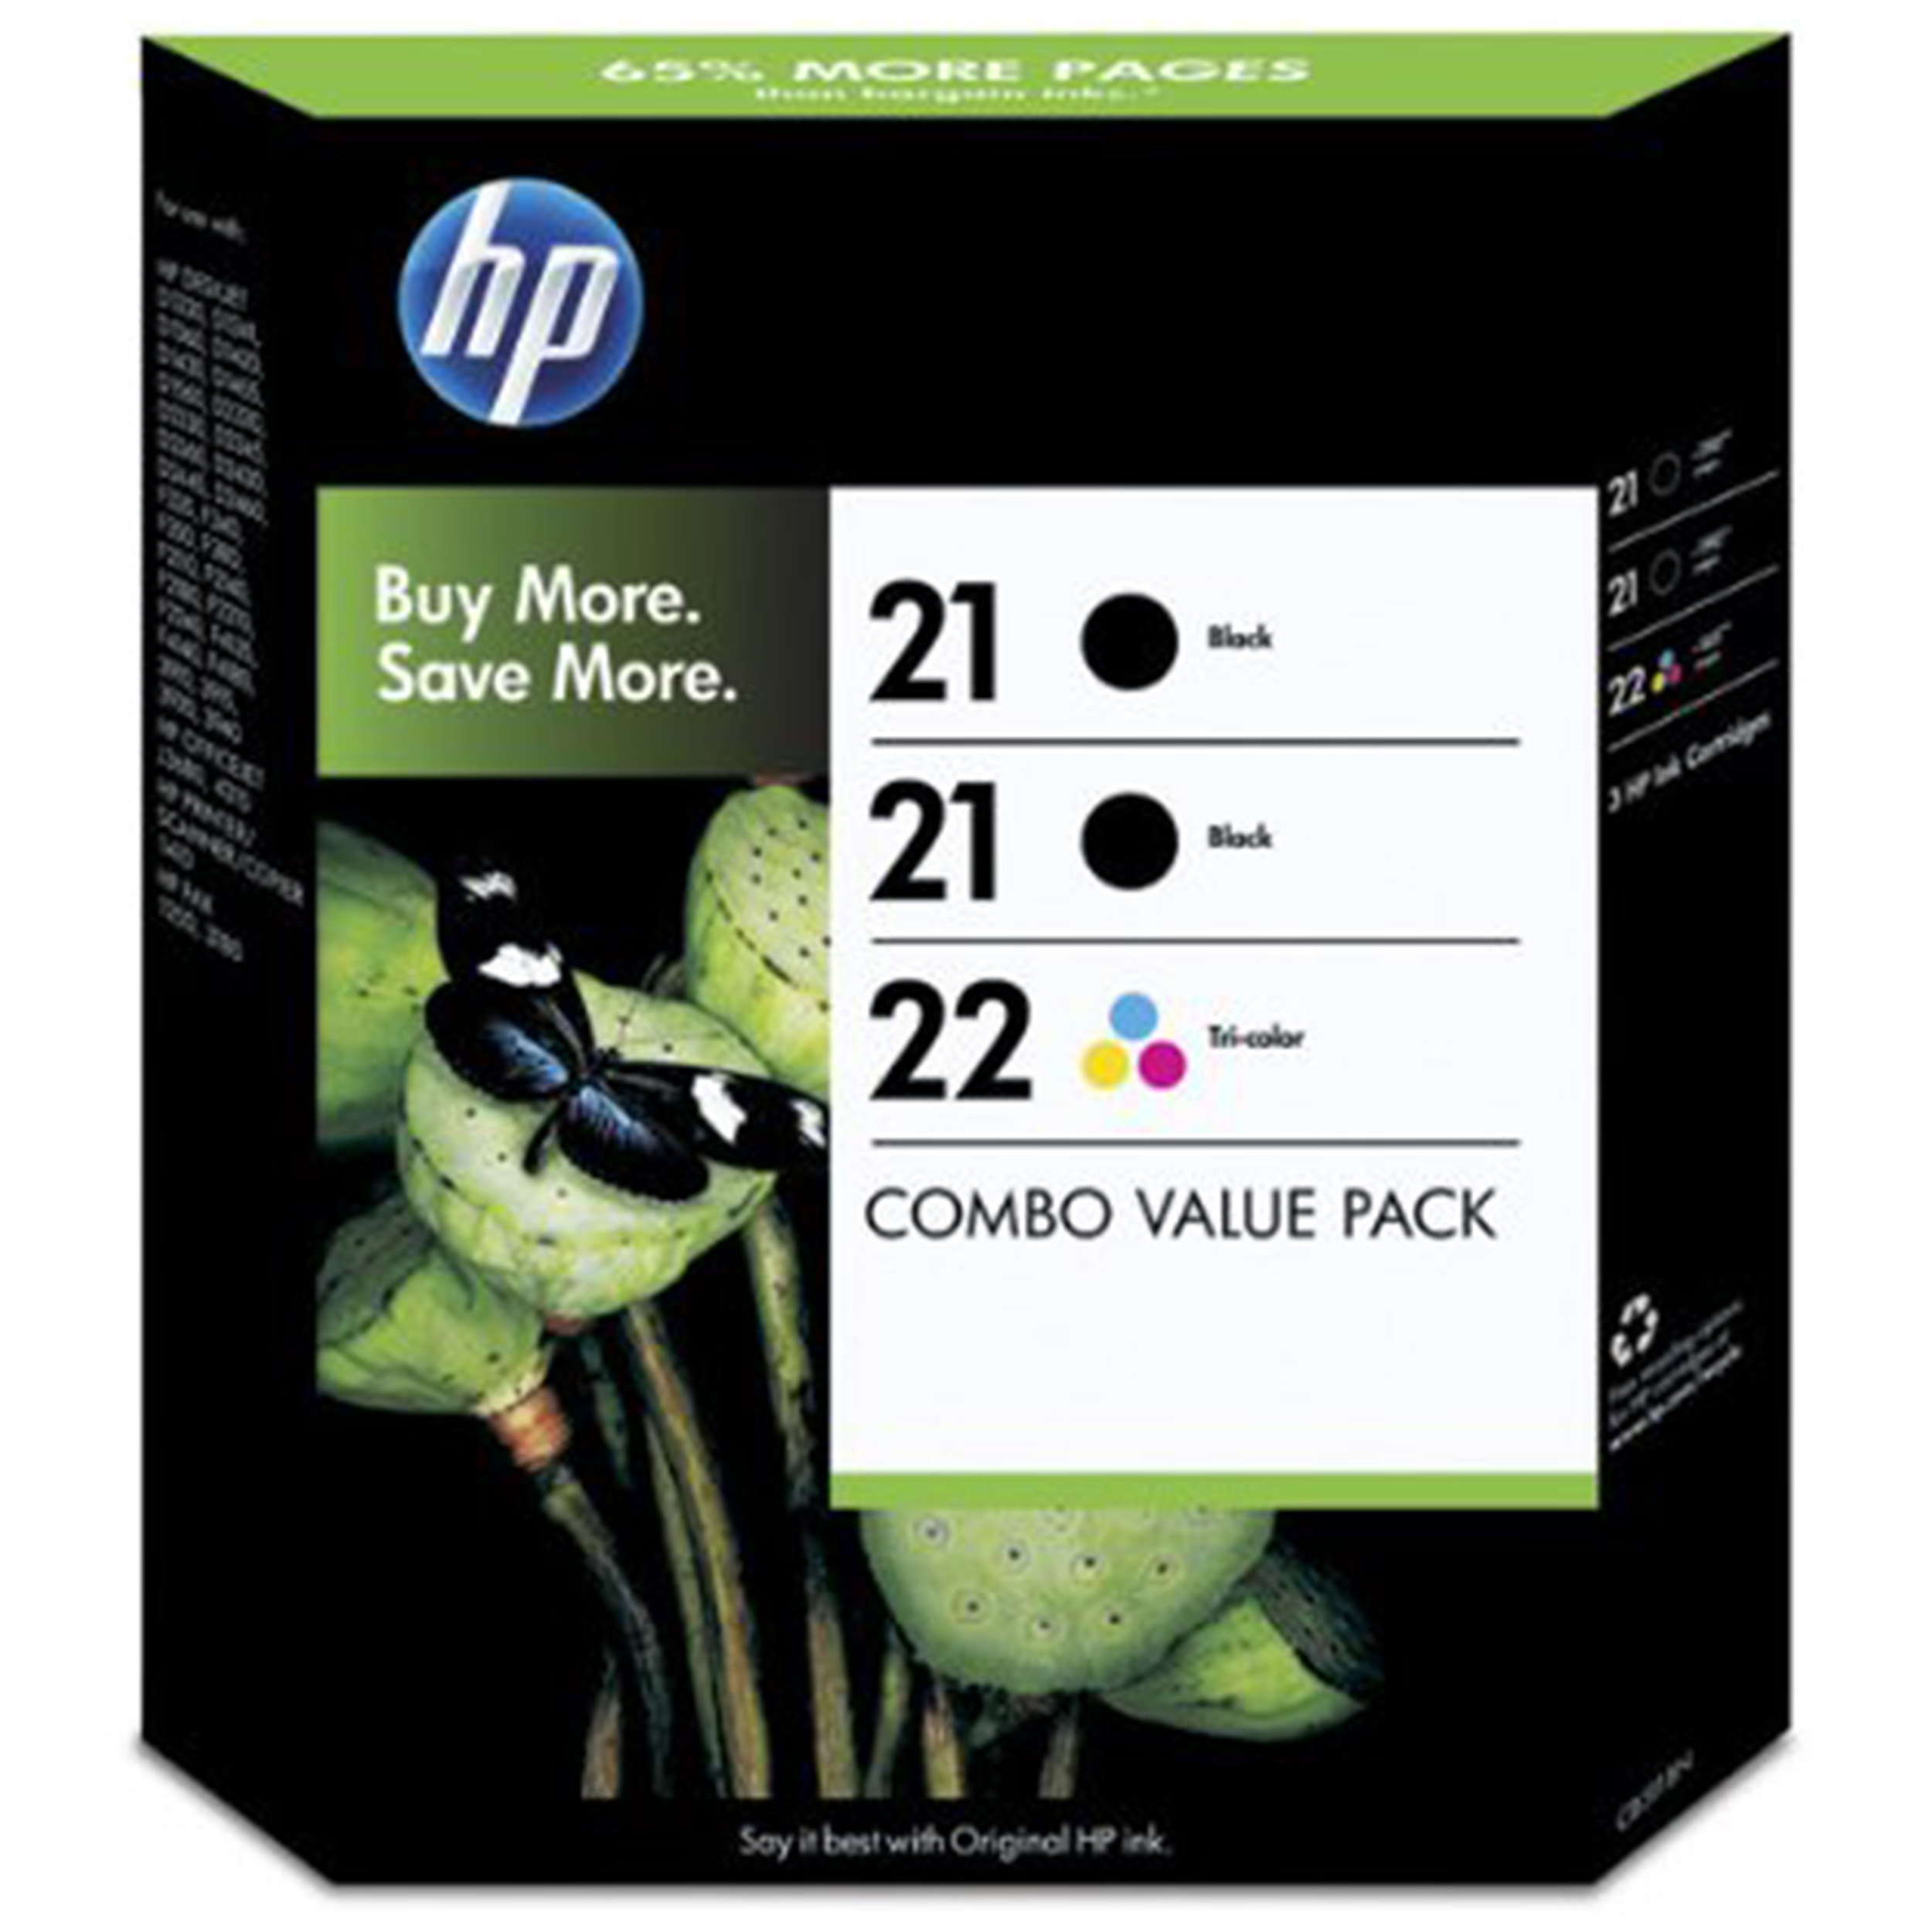 HP 21 multi pack / cyaan, geel, magenta, zwart